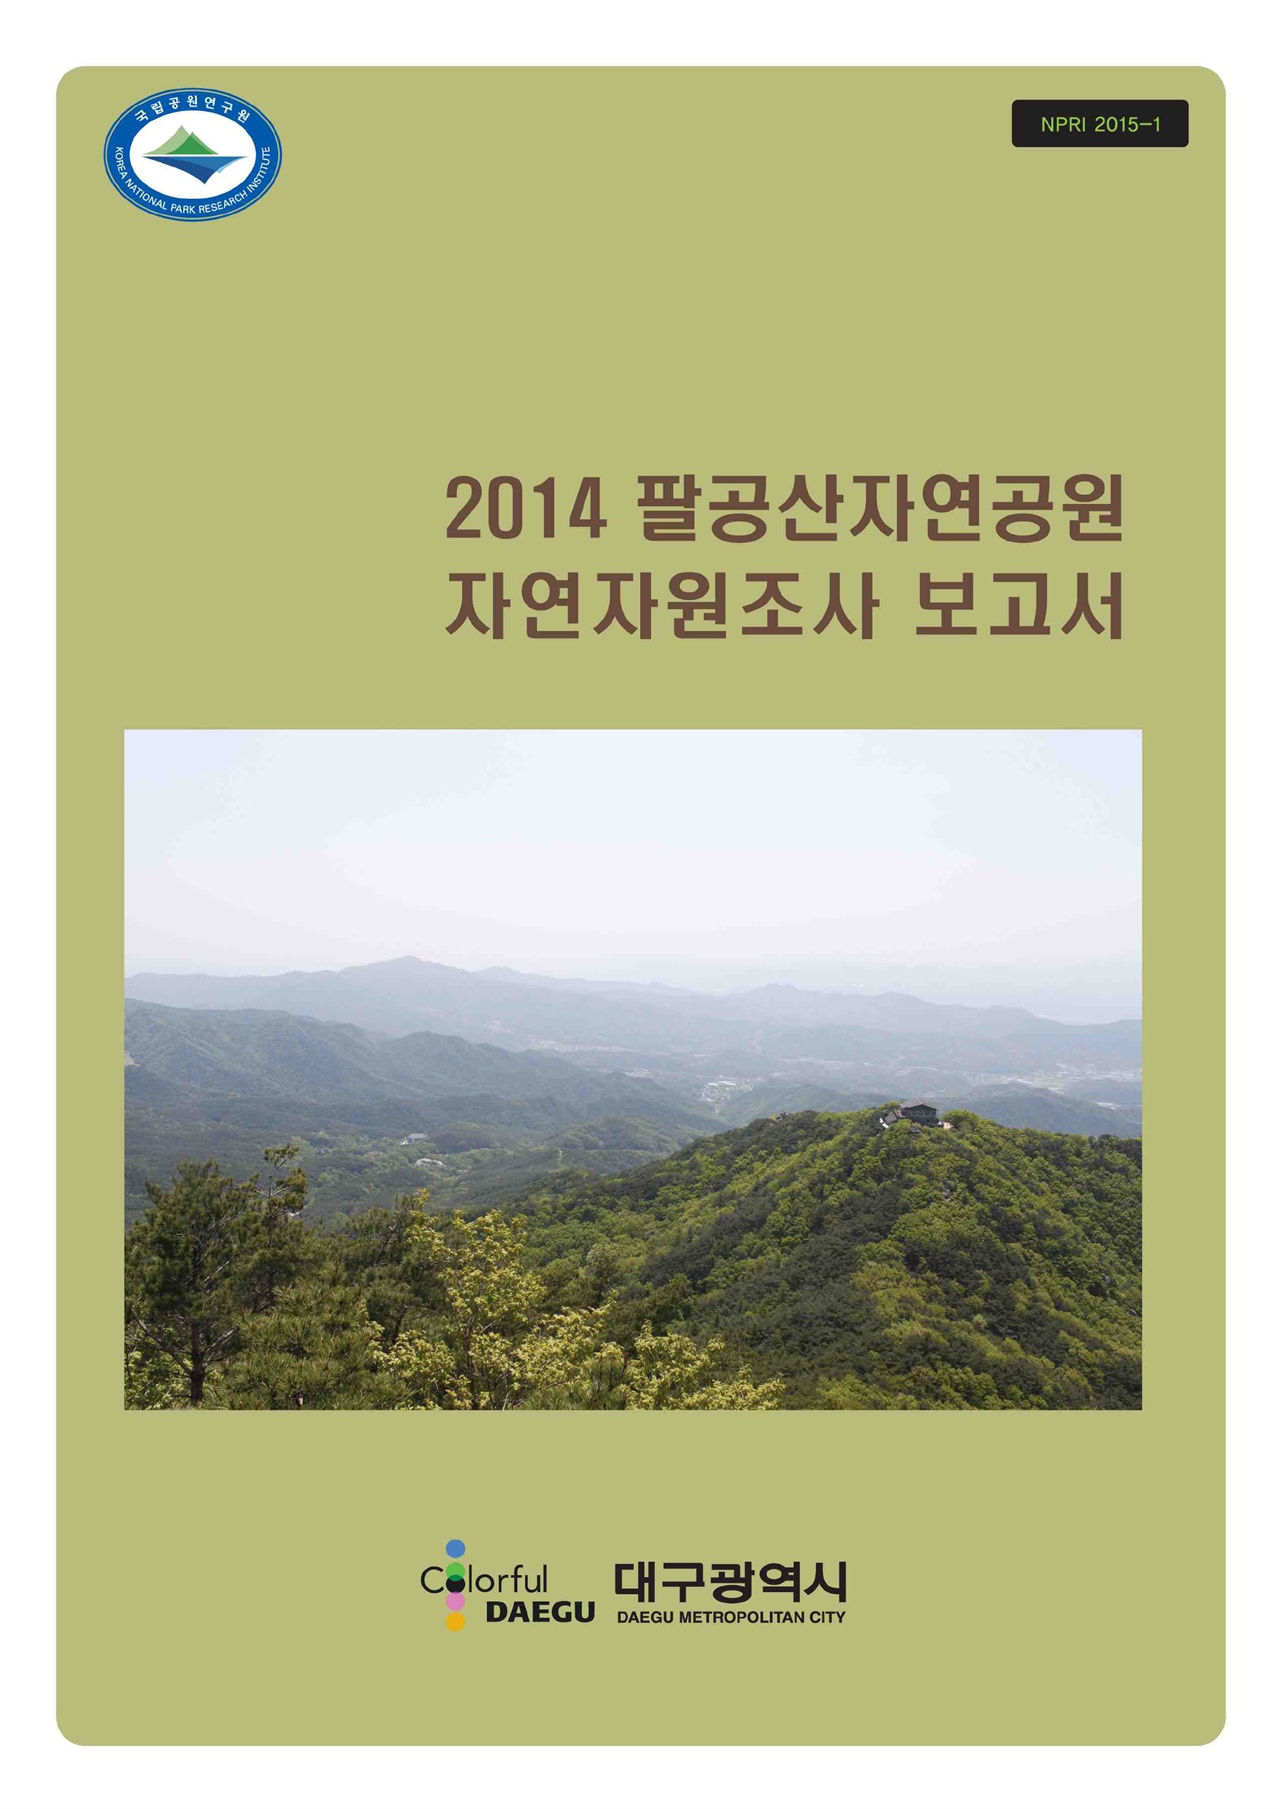 팔공산은 2014년 국립공원연구원의 자연자원조사를 통해 생태계의 보고임이 확인됐다. 